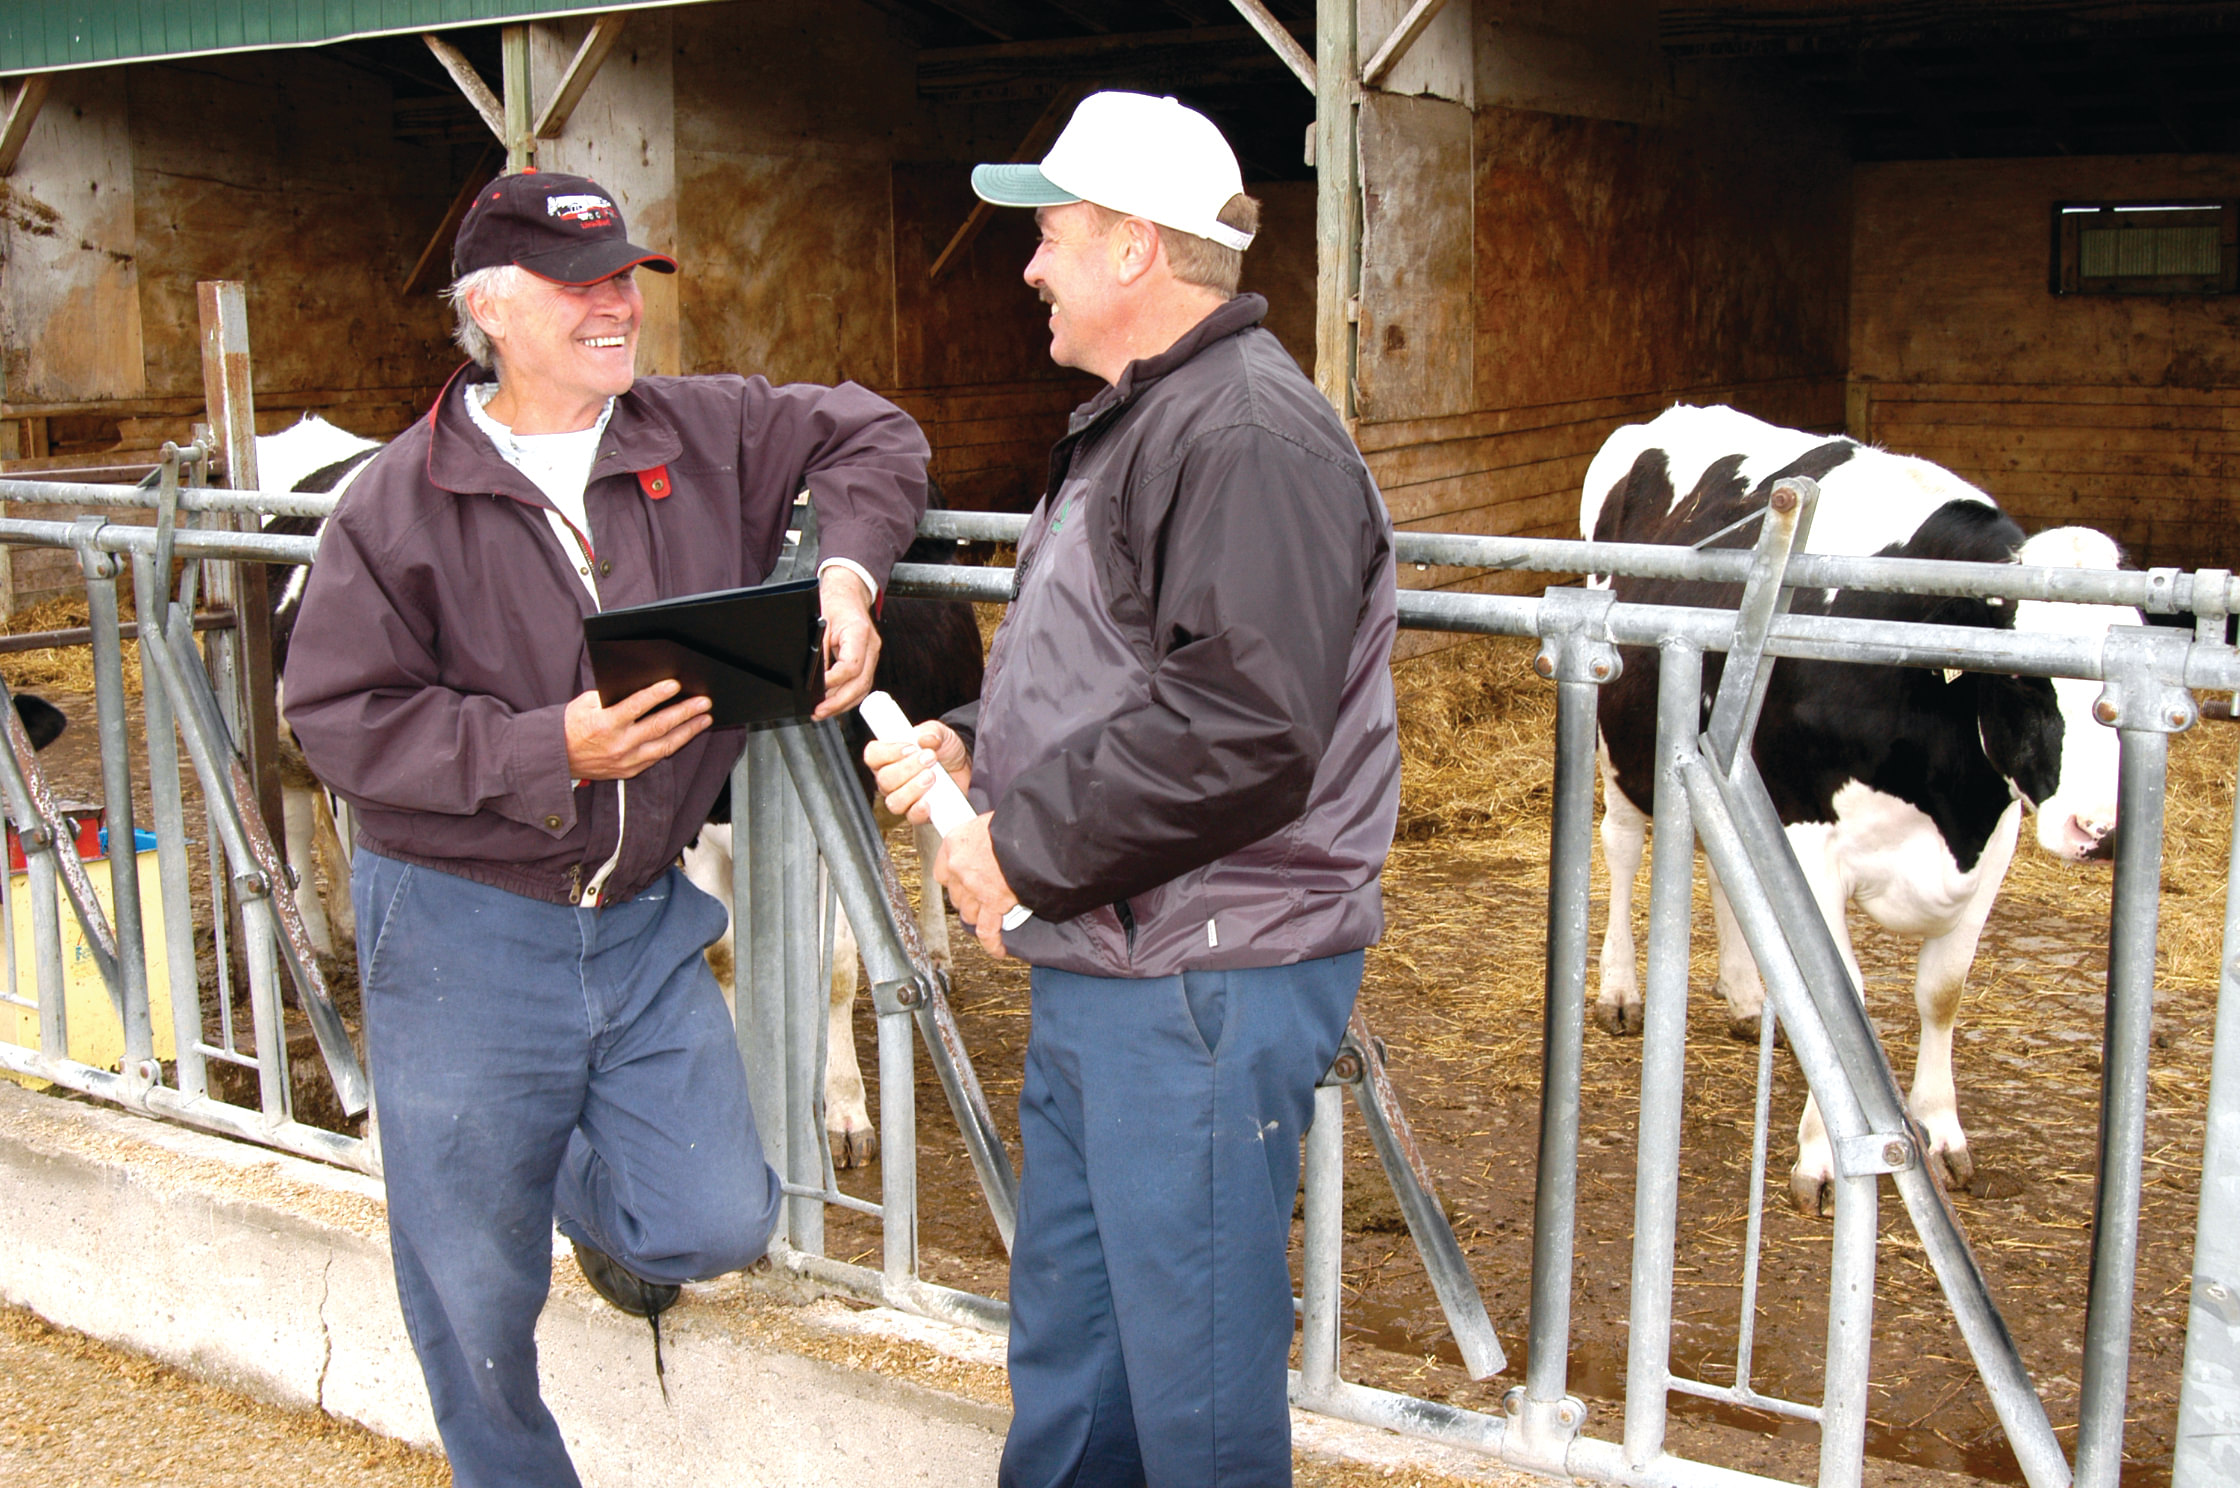 Cette photo montre deux agriculteurs (deux hommes) debout devant un enclos de ferme laitière, avec une vache Holstein en arrière-plan.